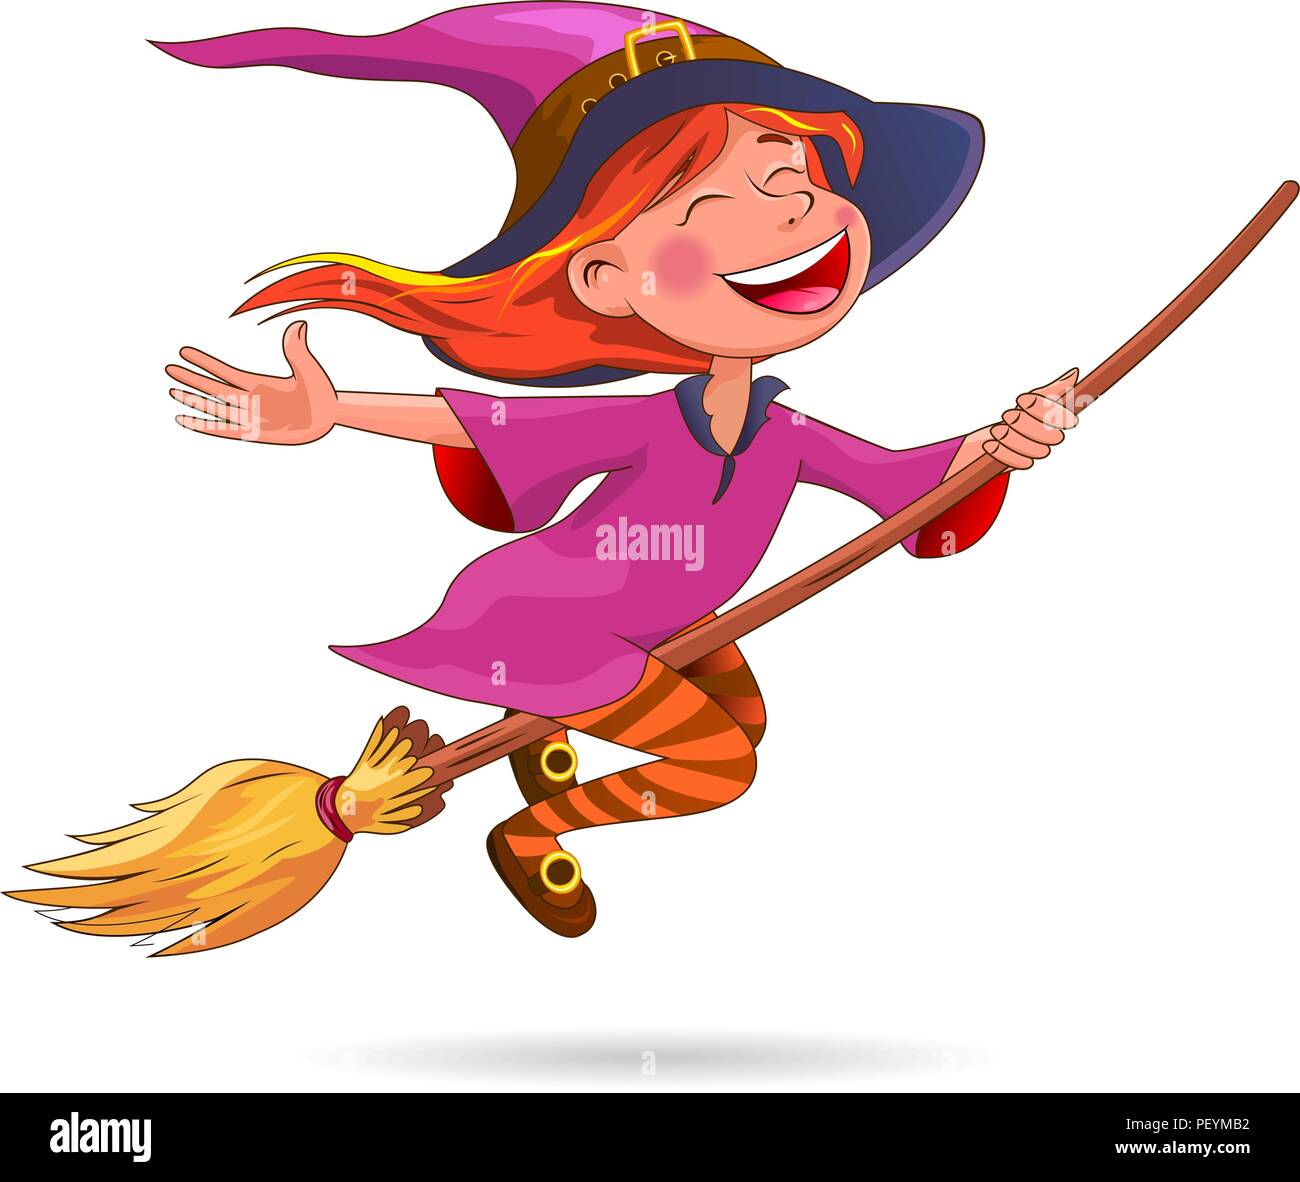 Eine kleine Hexe fliegt auf einem Besen. Hexe mit Besen auf einem weißen  Hintergrund Stock-Vektorgrafik - Alamy